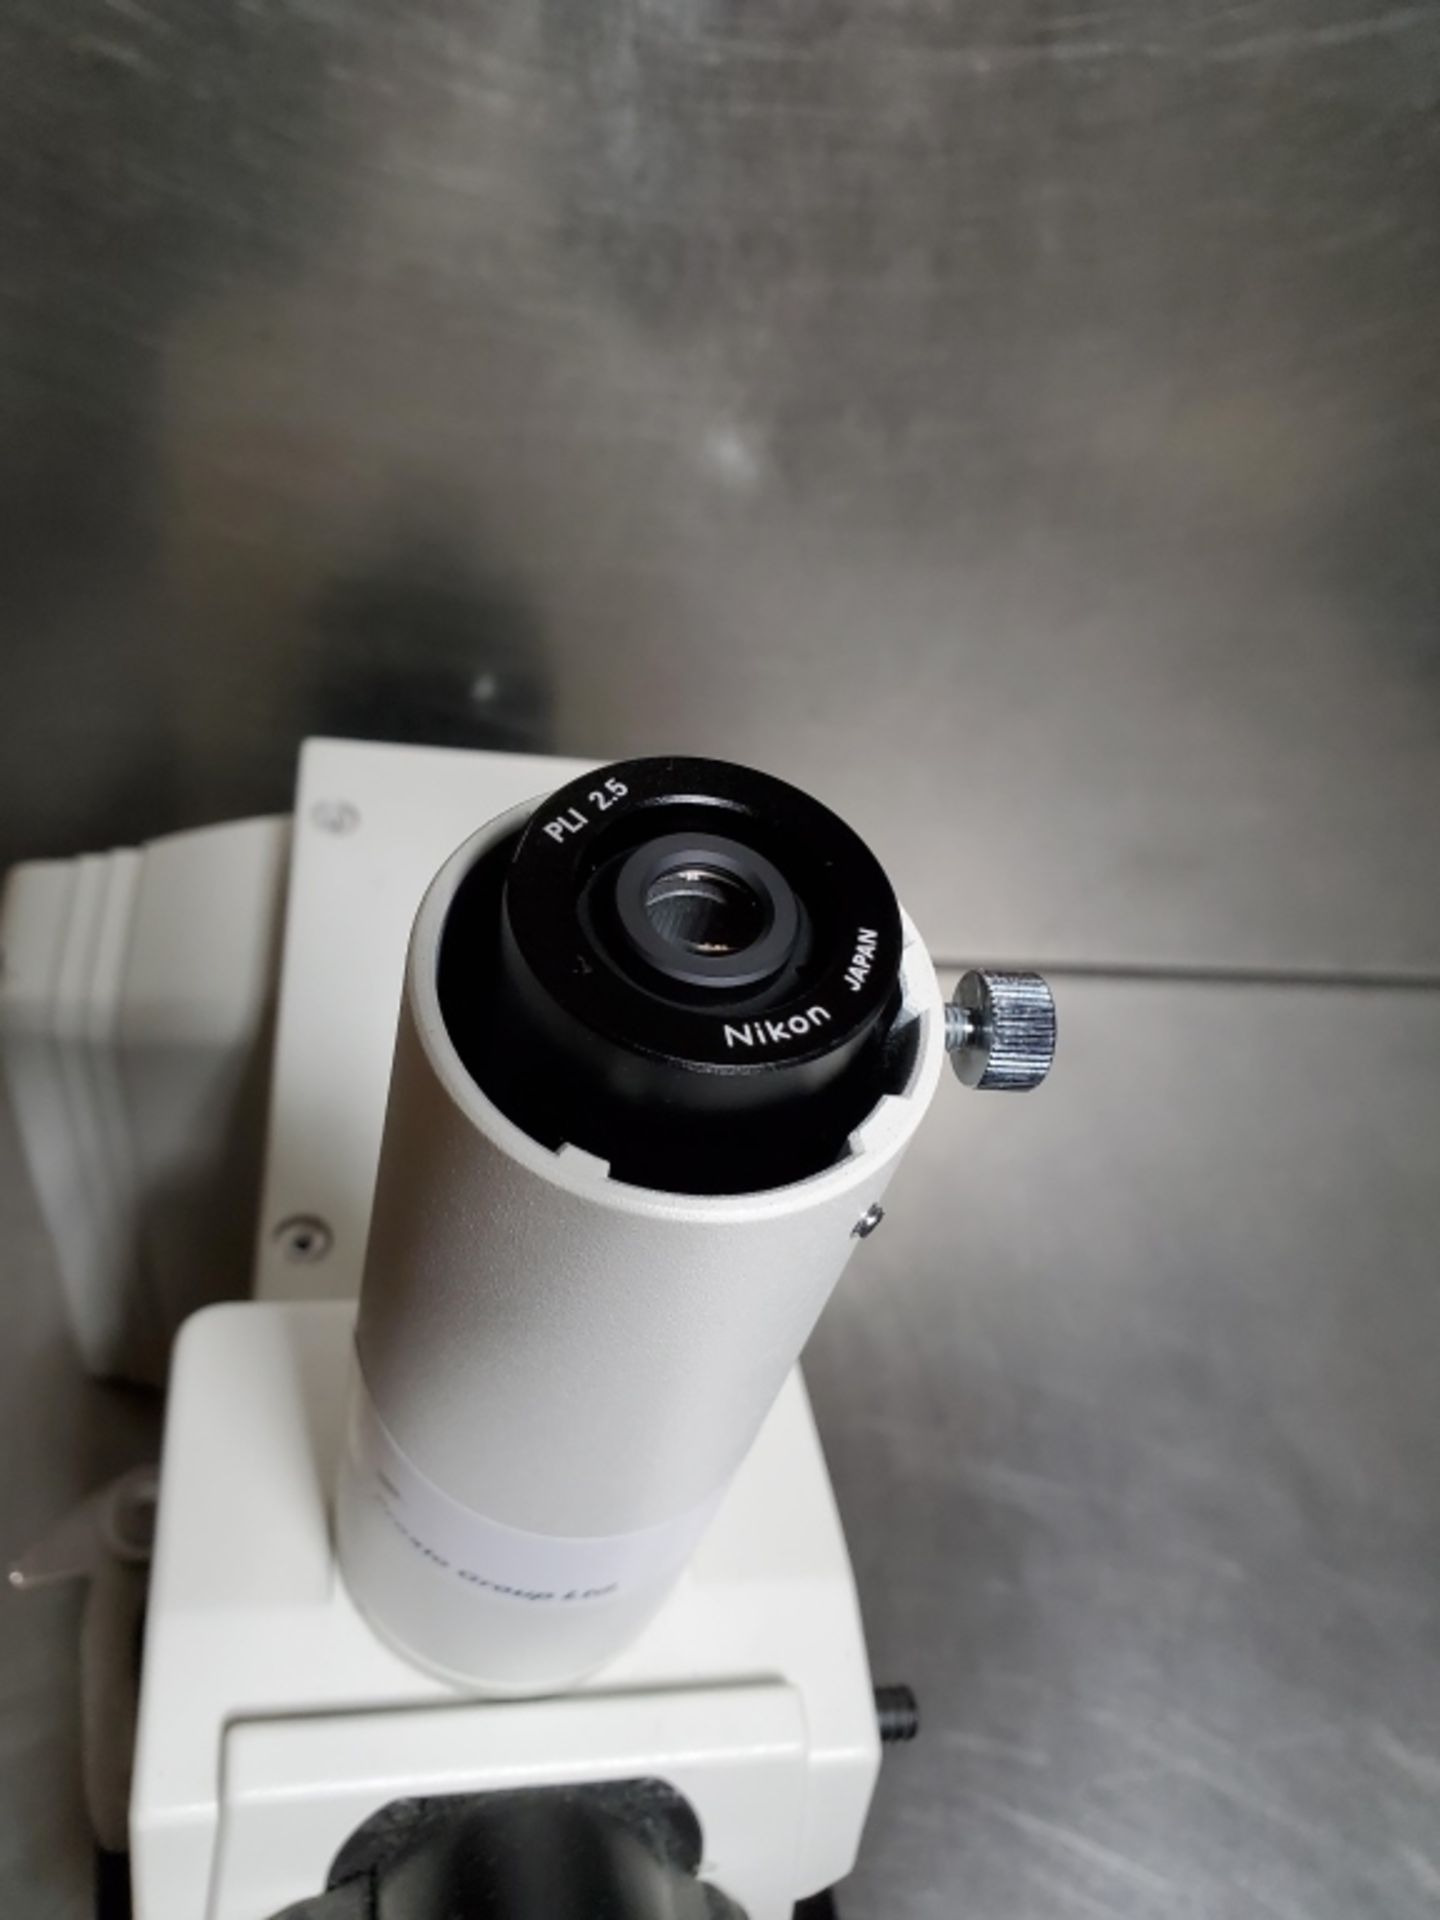 Nikon Eclipse Model E600 Microscope - Image 8 of 15